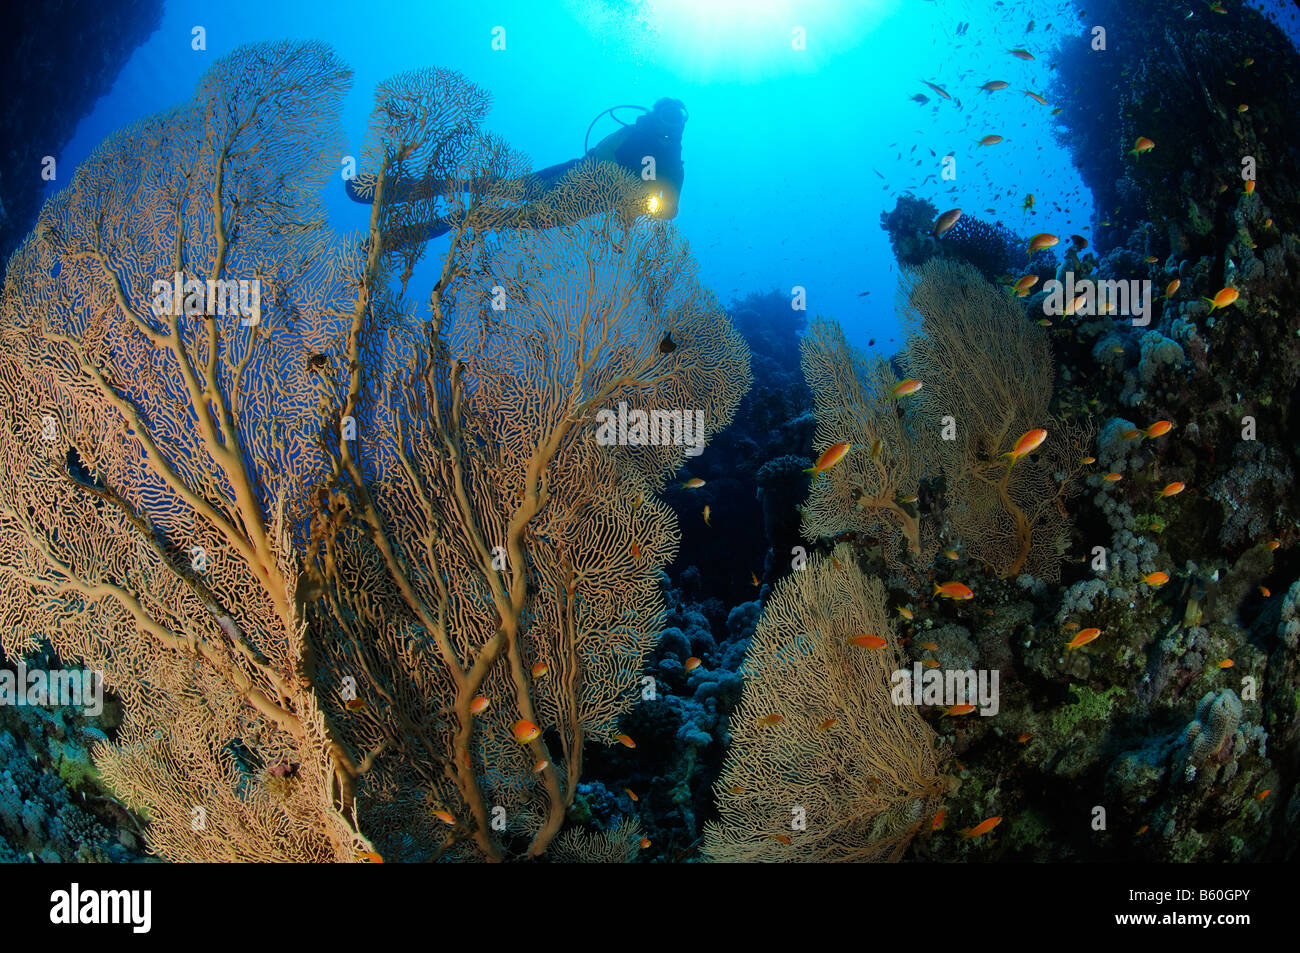 Subergorgia mollis Gorgonian sea fan with Anthias and scuba diver, Red Sea Stock Photo